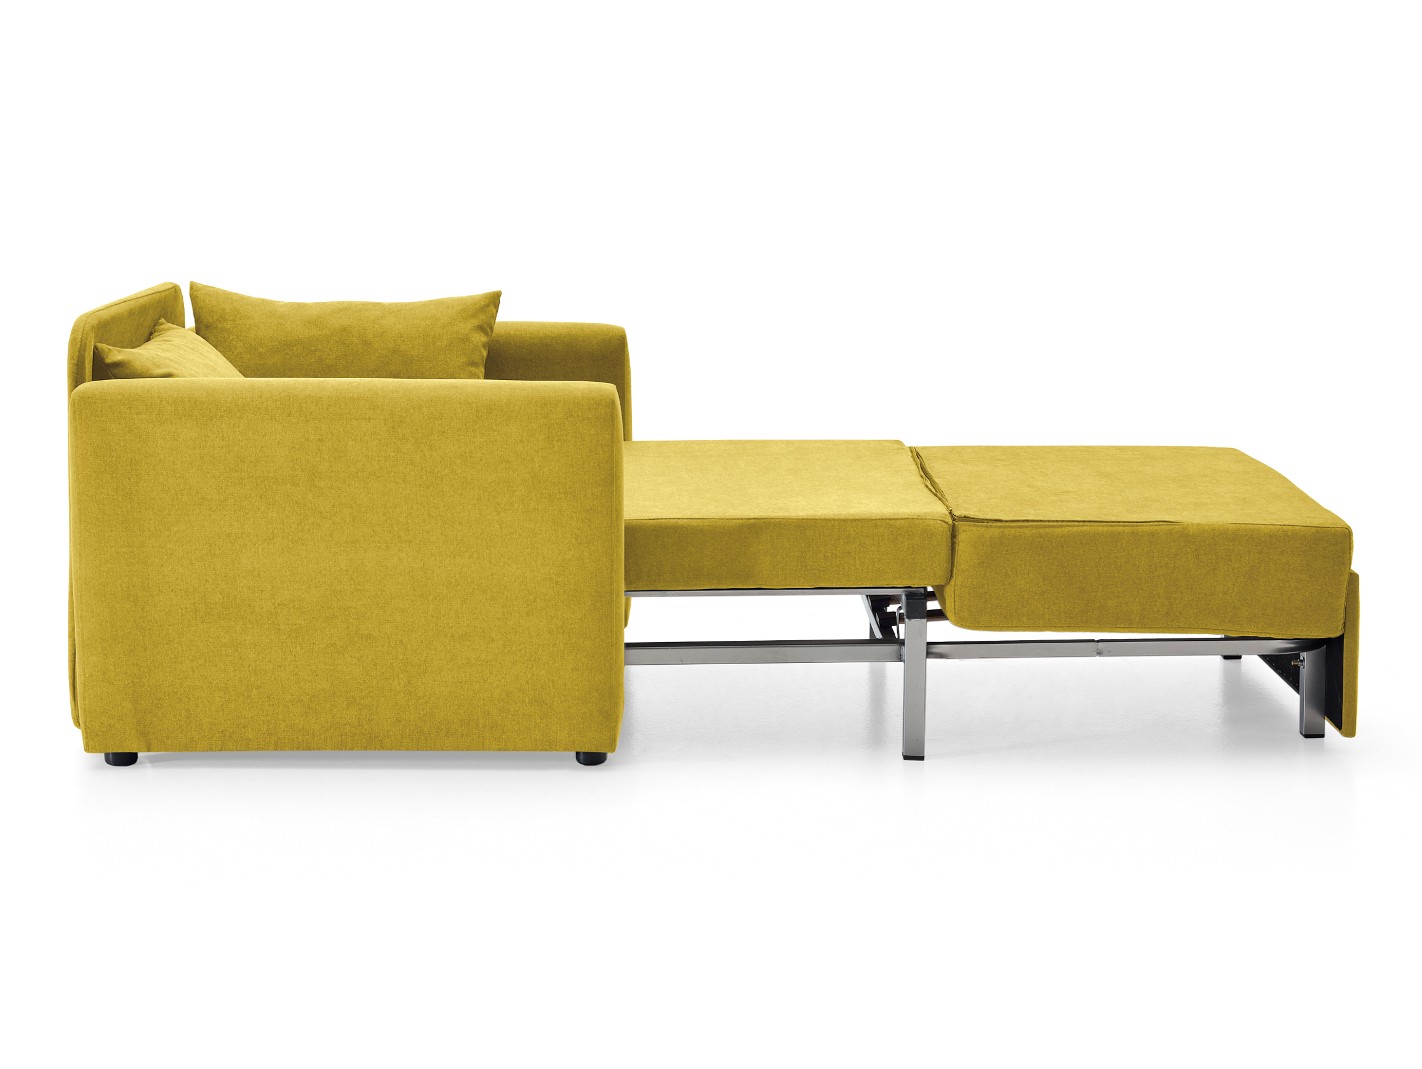 Sillón cama sistema de apertura extensible tapizado amarillo Merkamueble